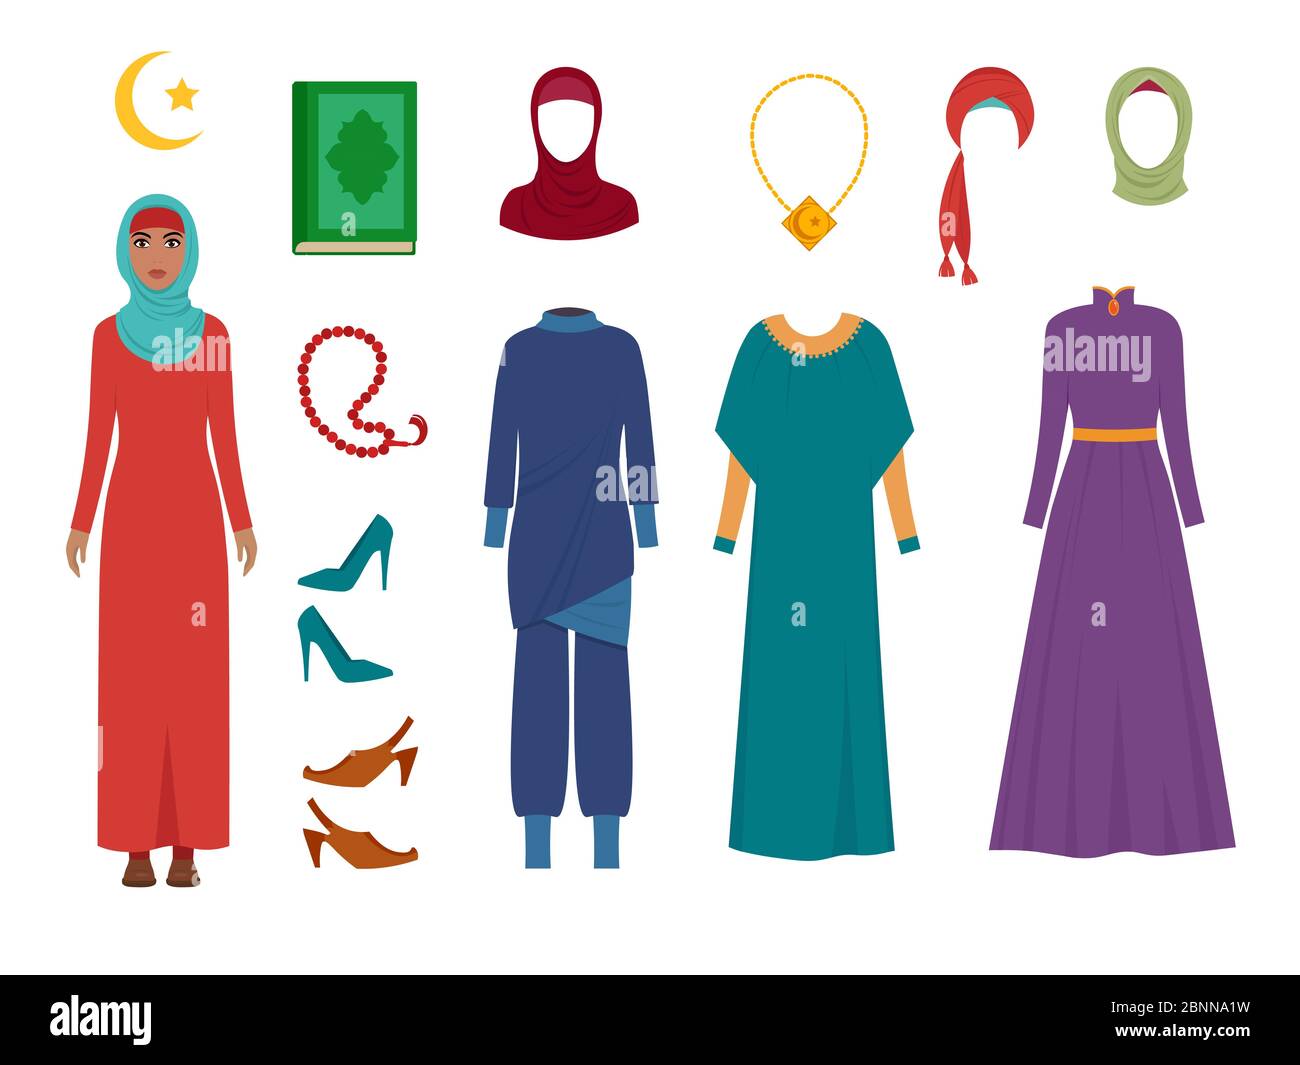 Vêtements de femmes arabes. National islamique mode femmes vêtements articles foulard hijab robe musulmans iraniens filles turques images vectorielles Illustration de Vecteur